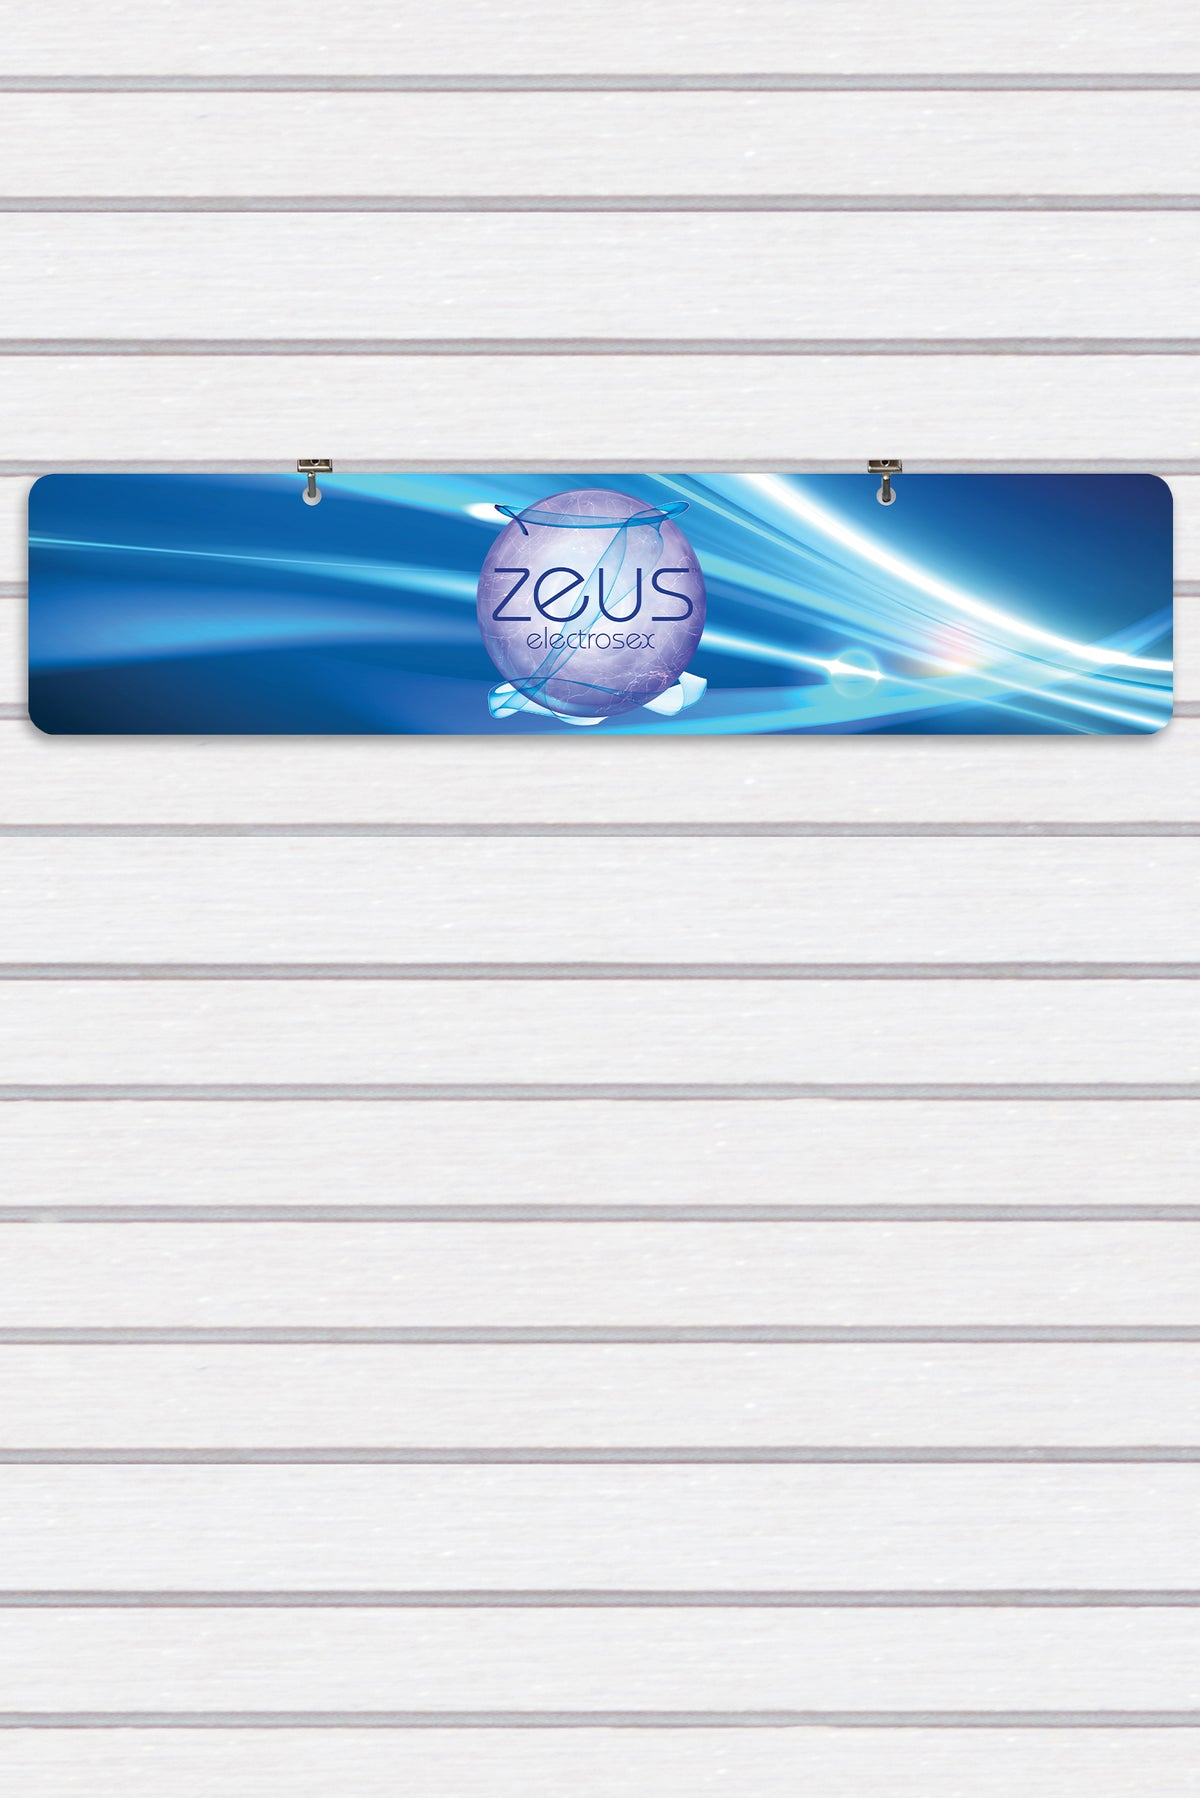 Zeus Electrosex Display Sign